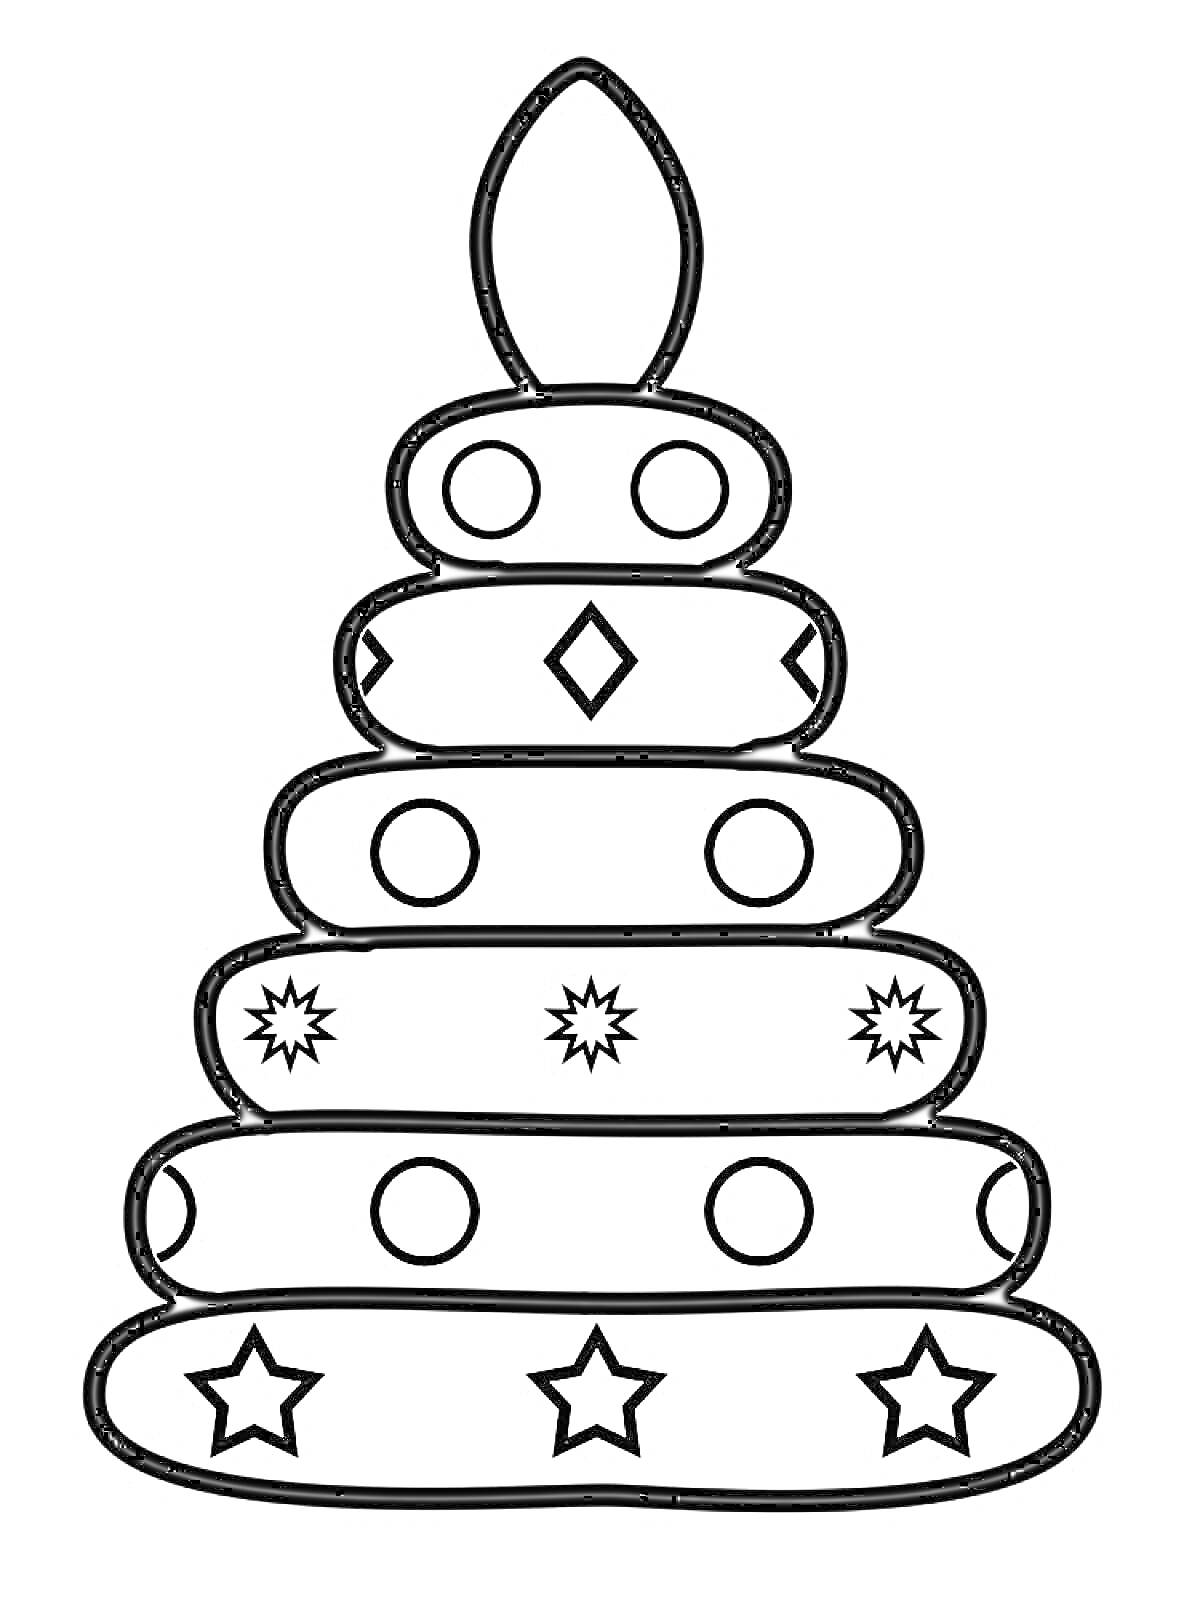 Раскраска Пирамидка с кольцами, кругами, ромбами, звездами и снежинками